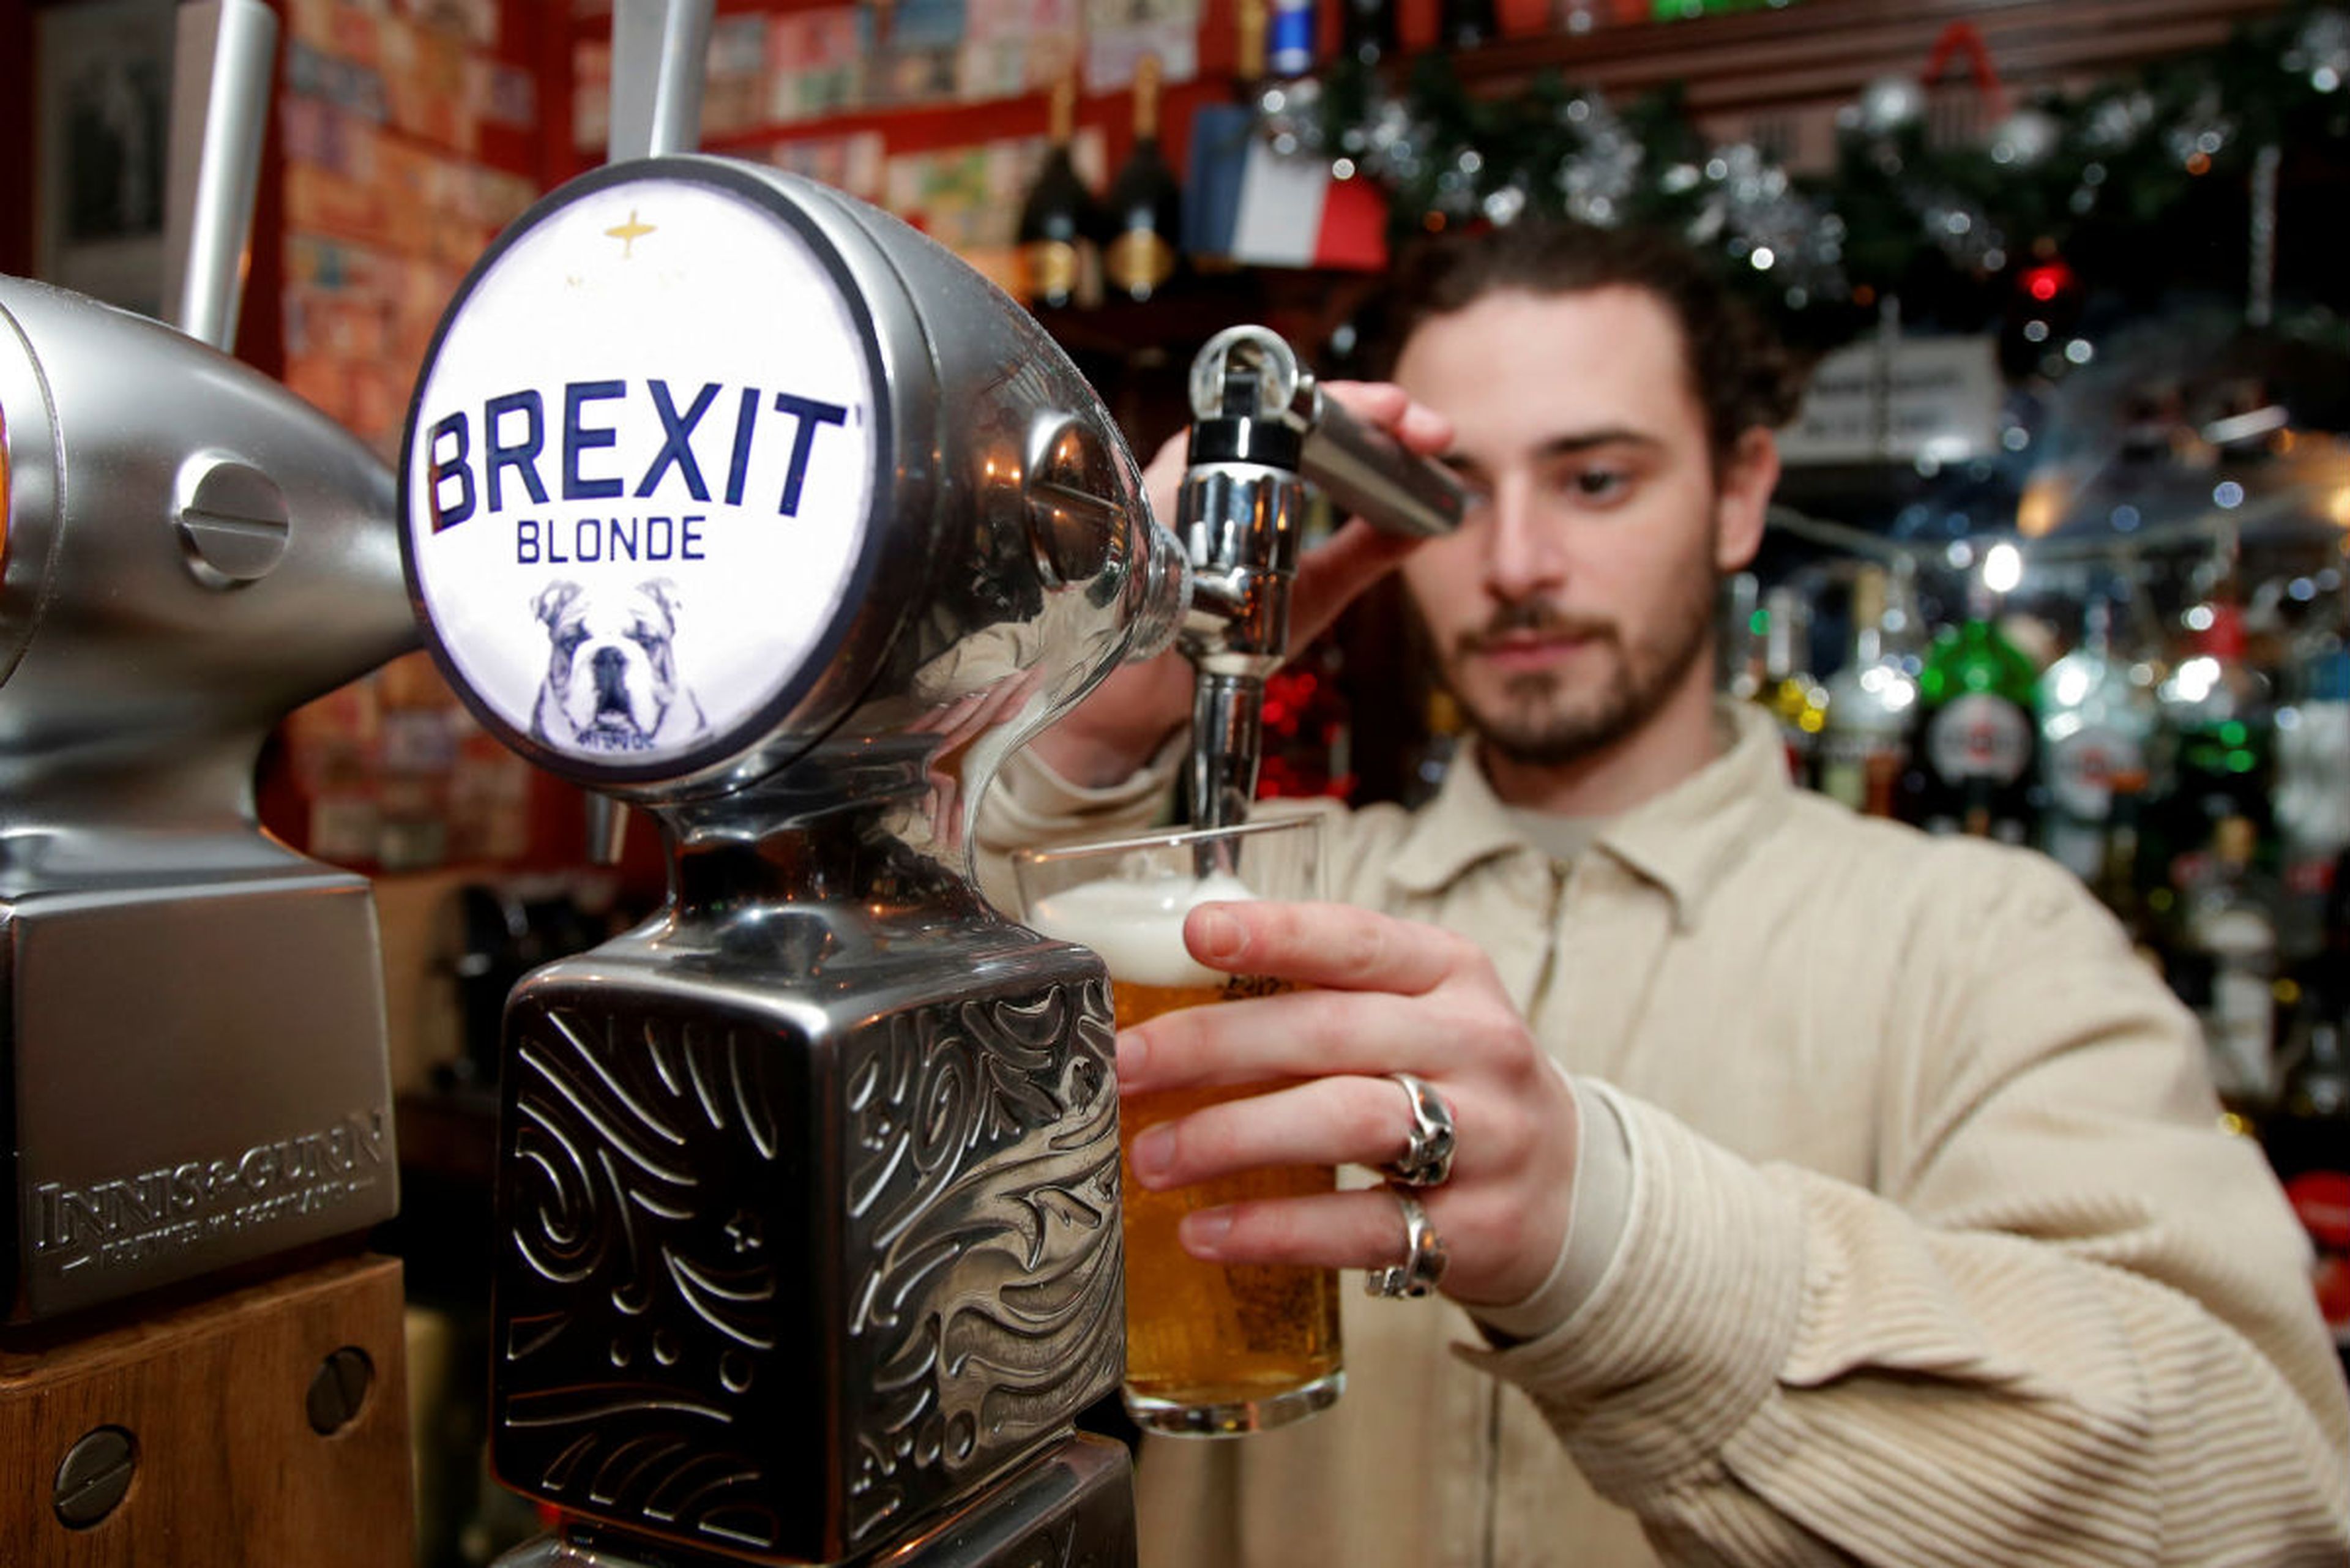 Un camarero sirve una cerveza Brexit.